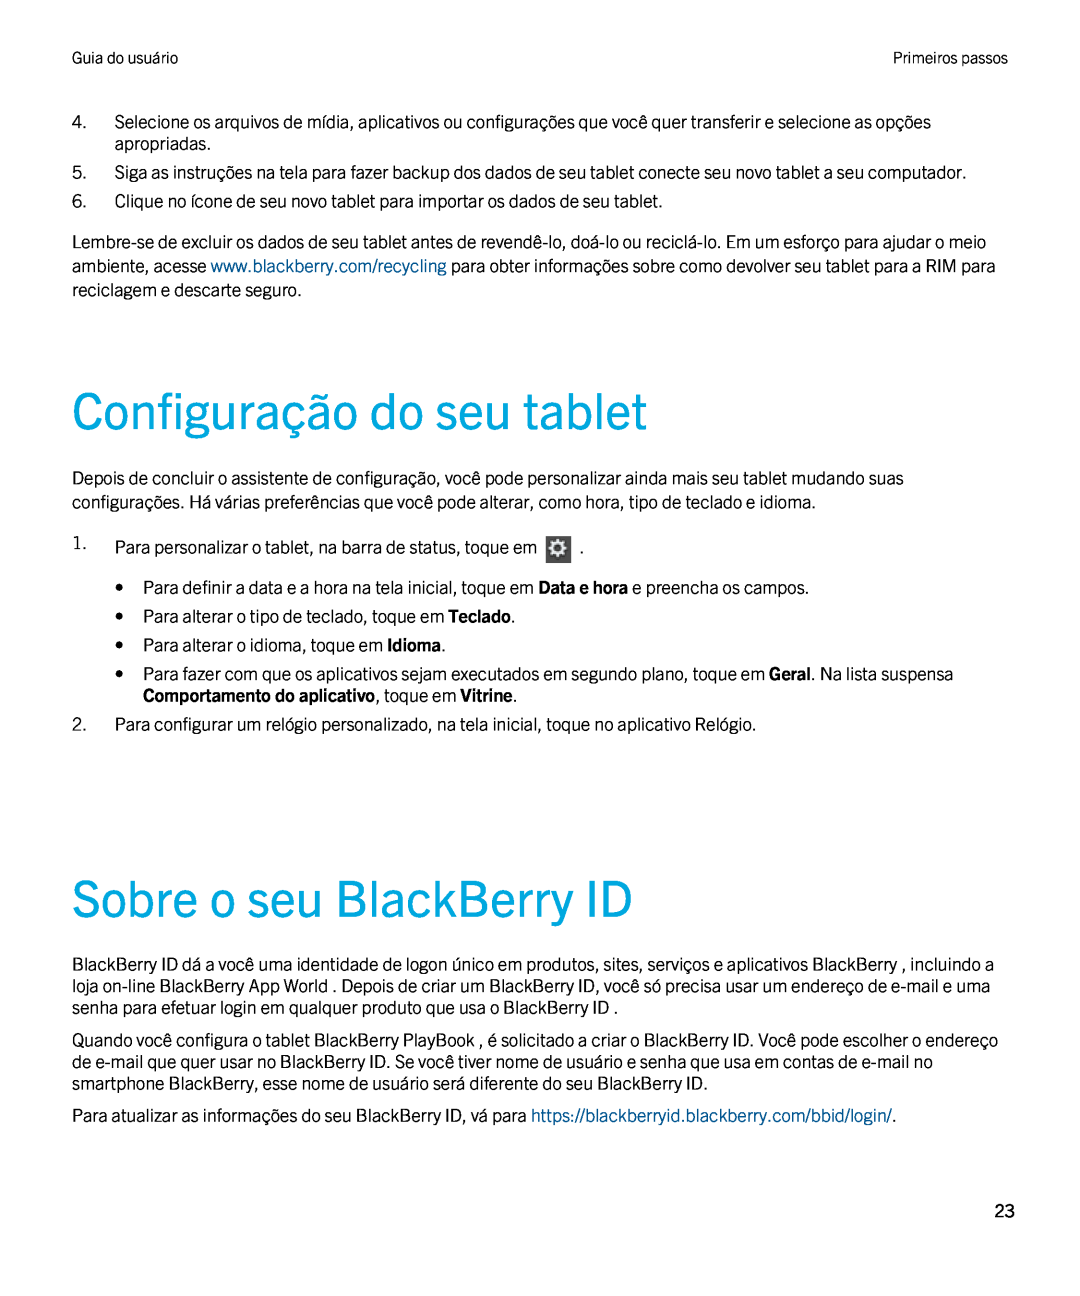 Blackberry 2.0.1 manual Configuração do seu tablet, Sobre o seu BlackBerry ID 